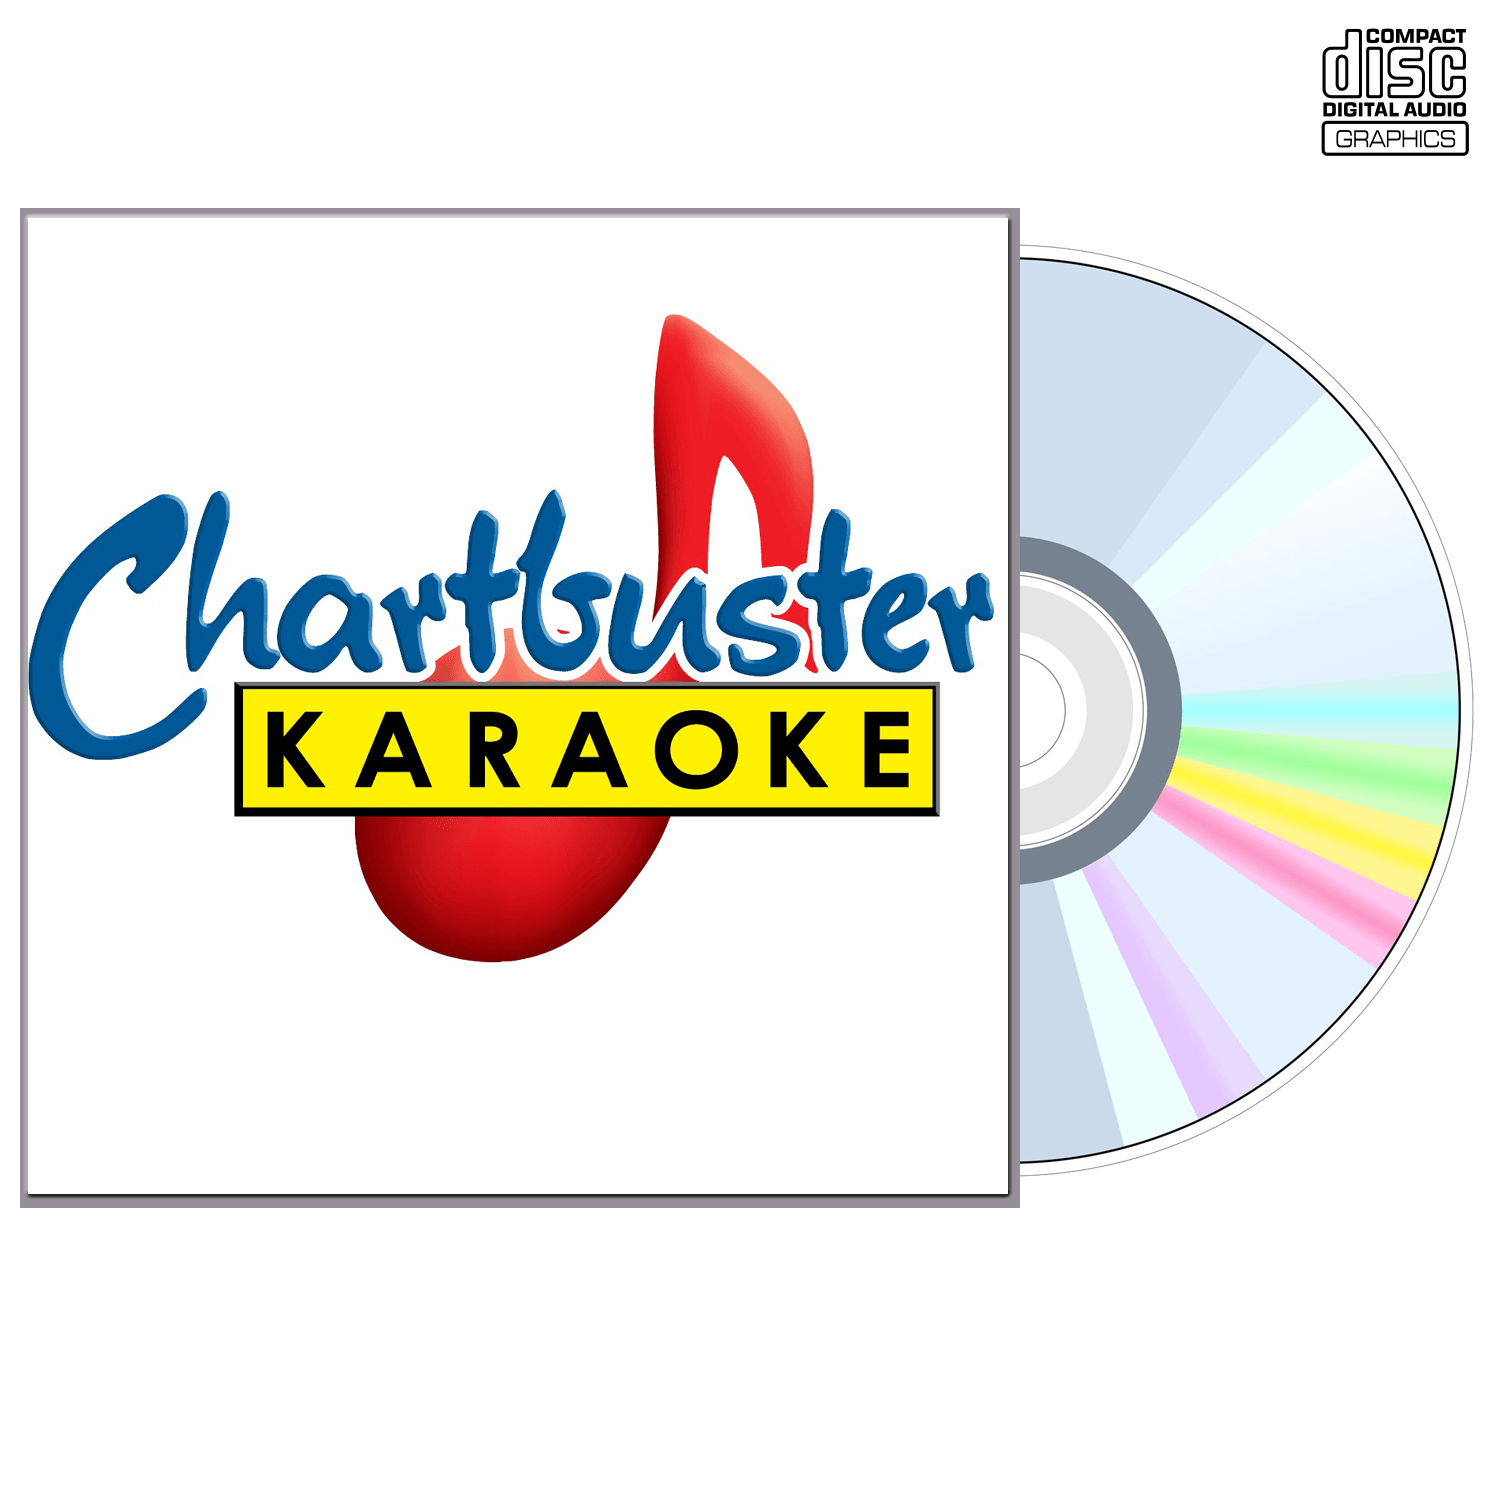 Steve Earle - CD+G - Chartbuster Karaoke - Karaoke Home Entertainment